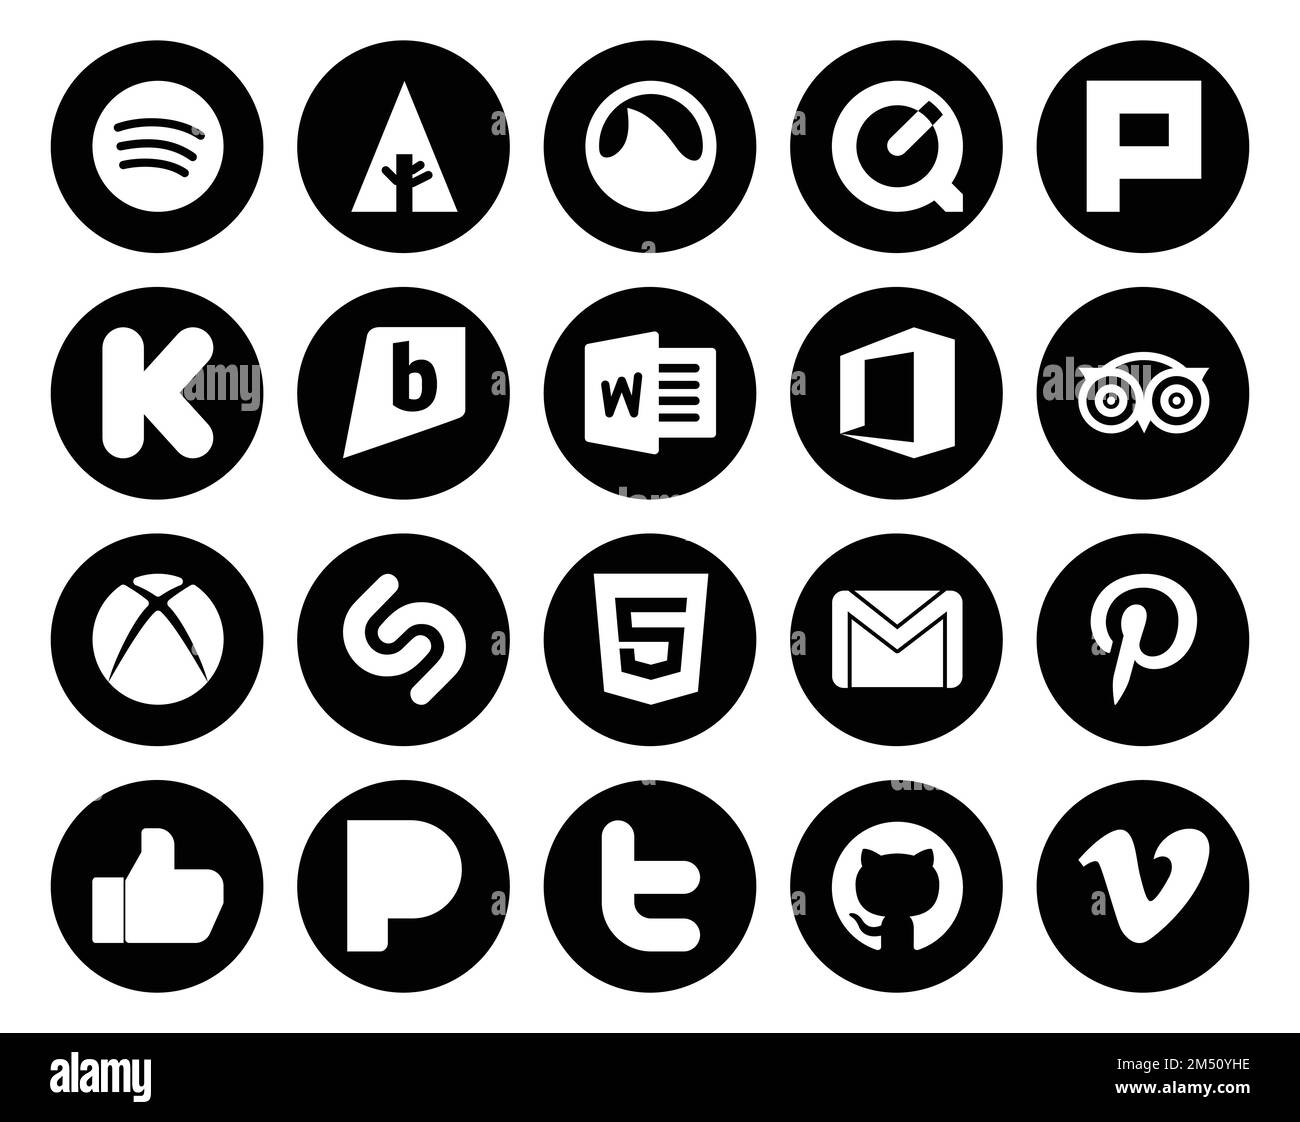 Gmail logo Banque d'images noir et blanc - Alamy